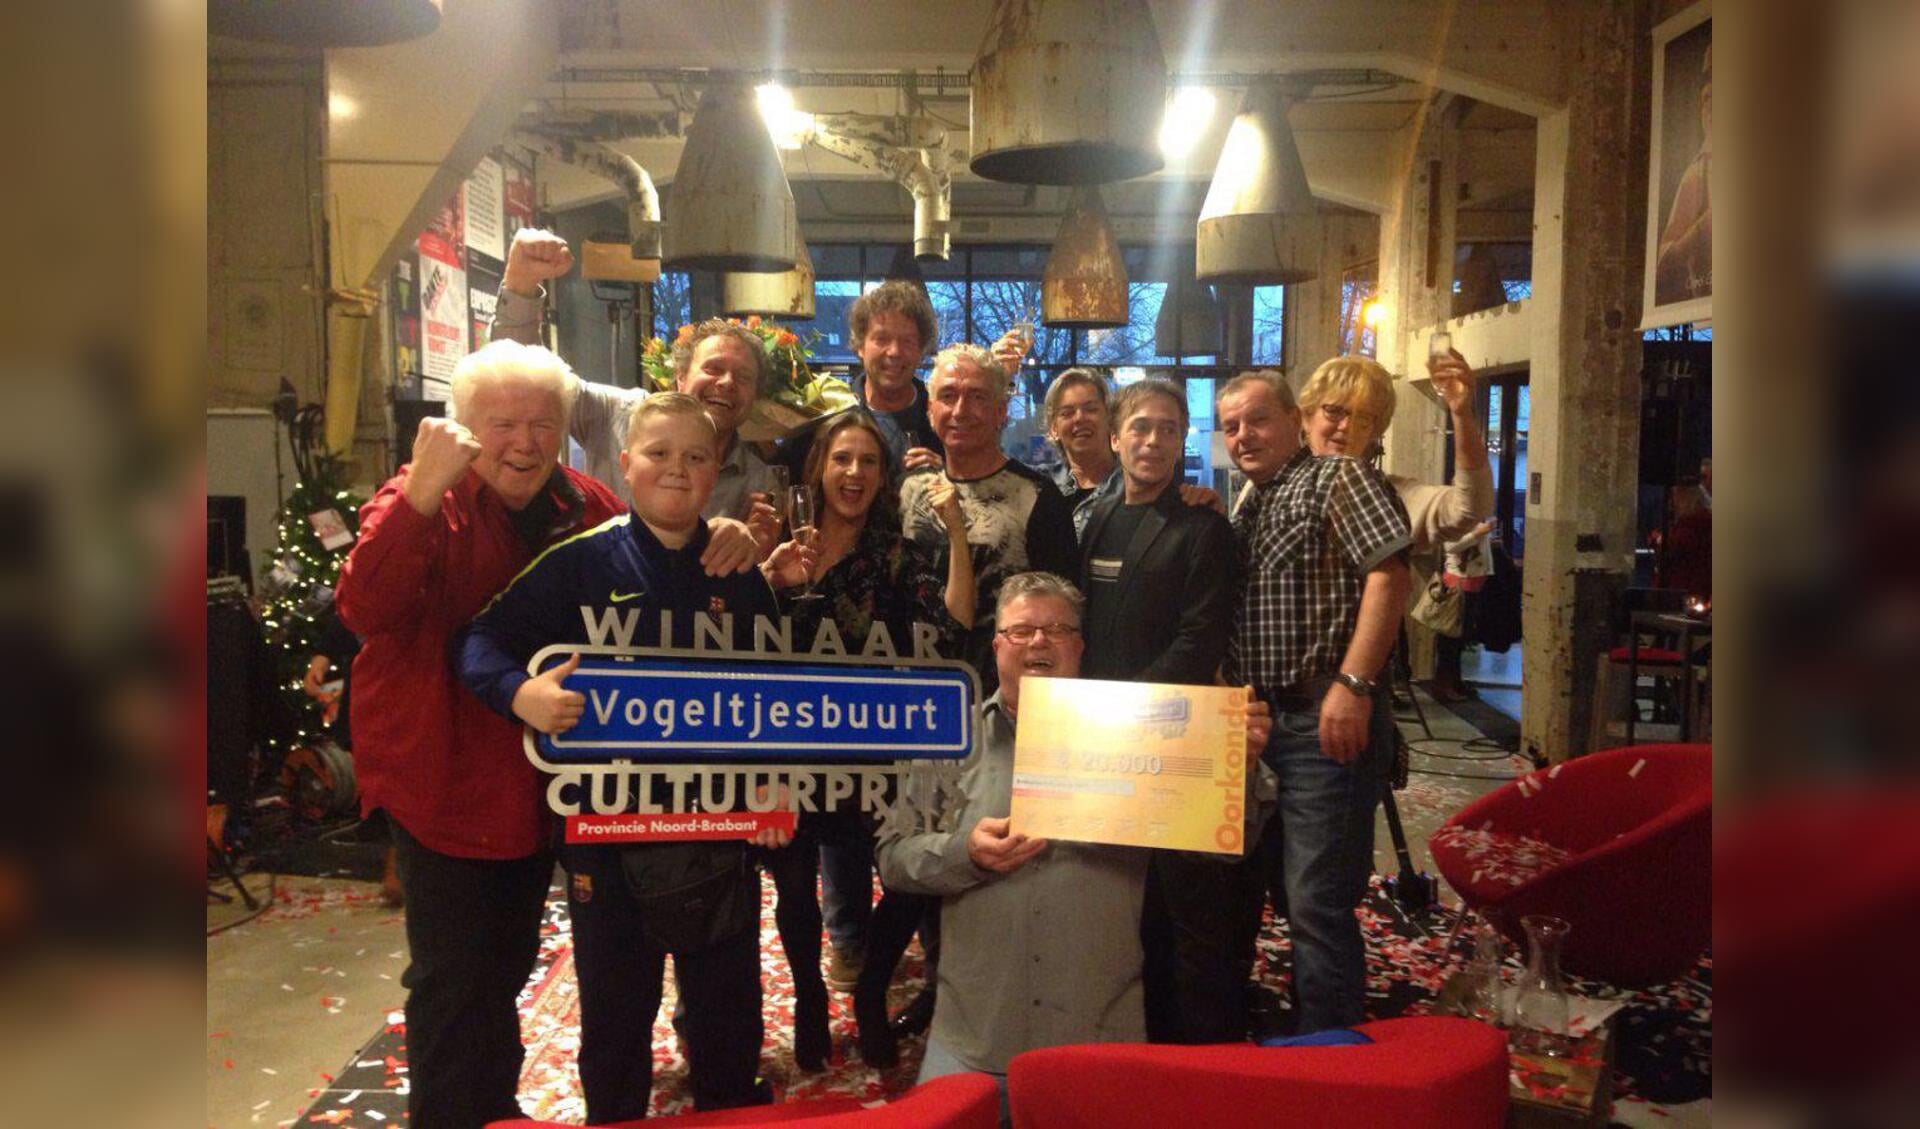 Pien Rosmalen, Peter van den Dungen en An van Dixhoorn samen met bewoners van de Vogeltjesbuurt met de prijs.